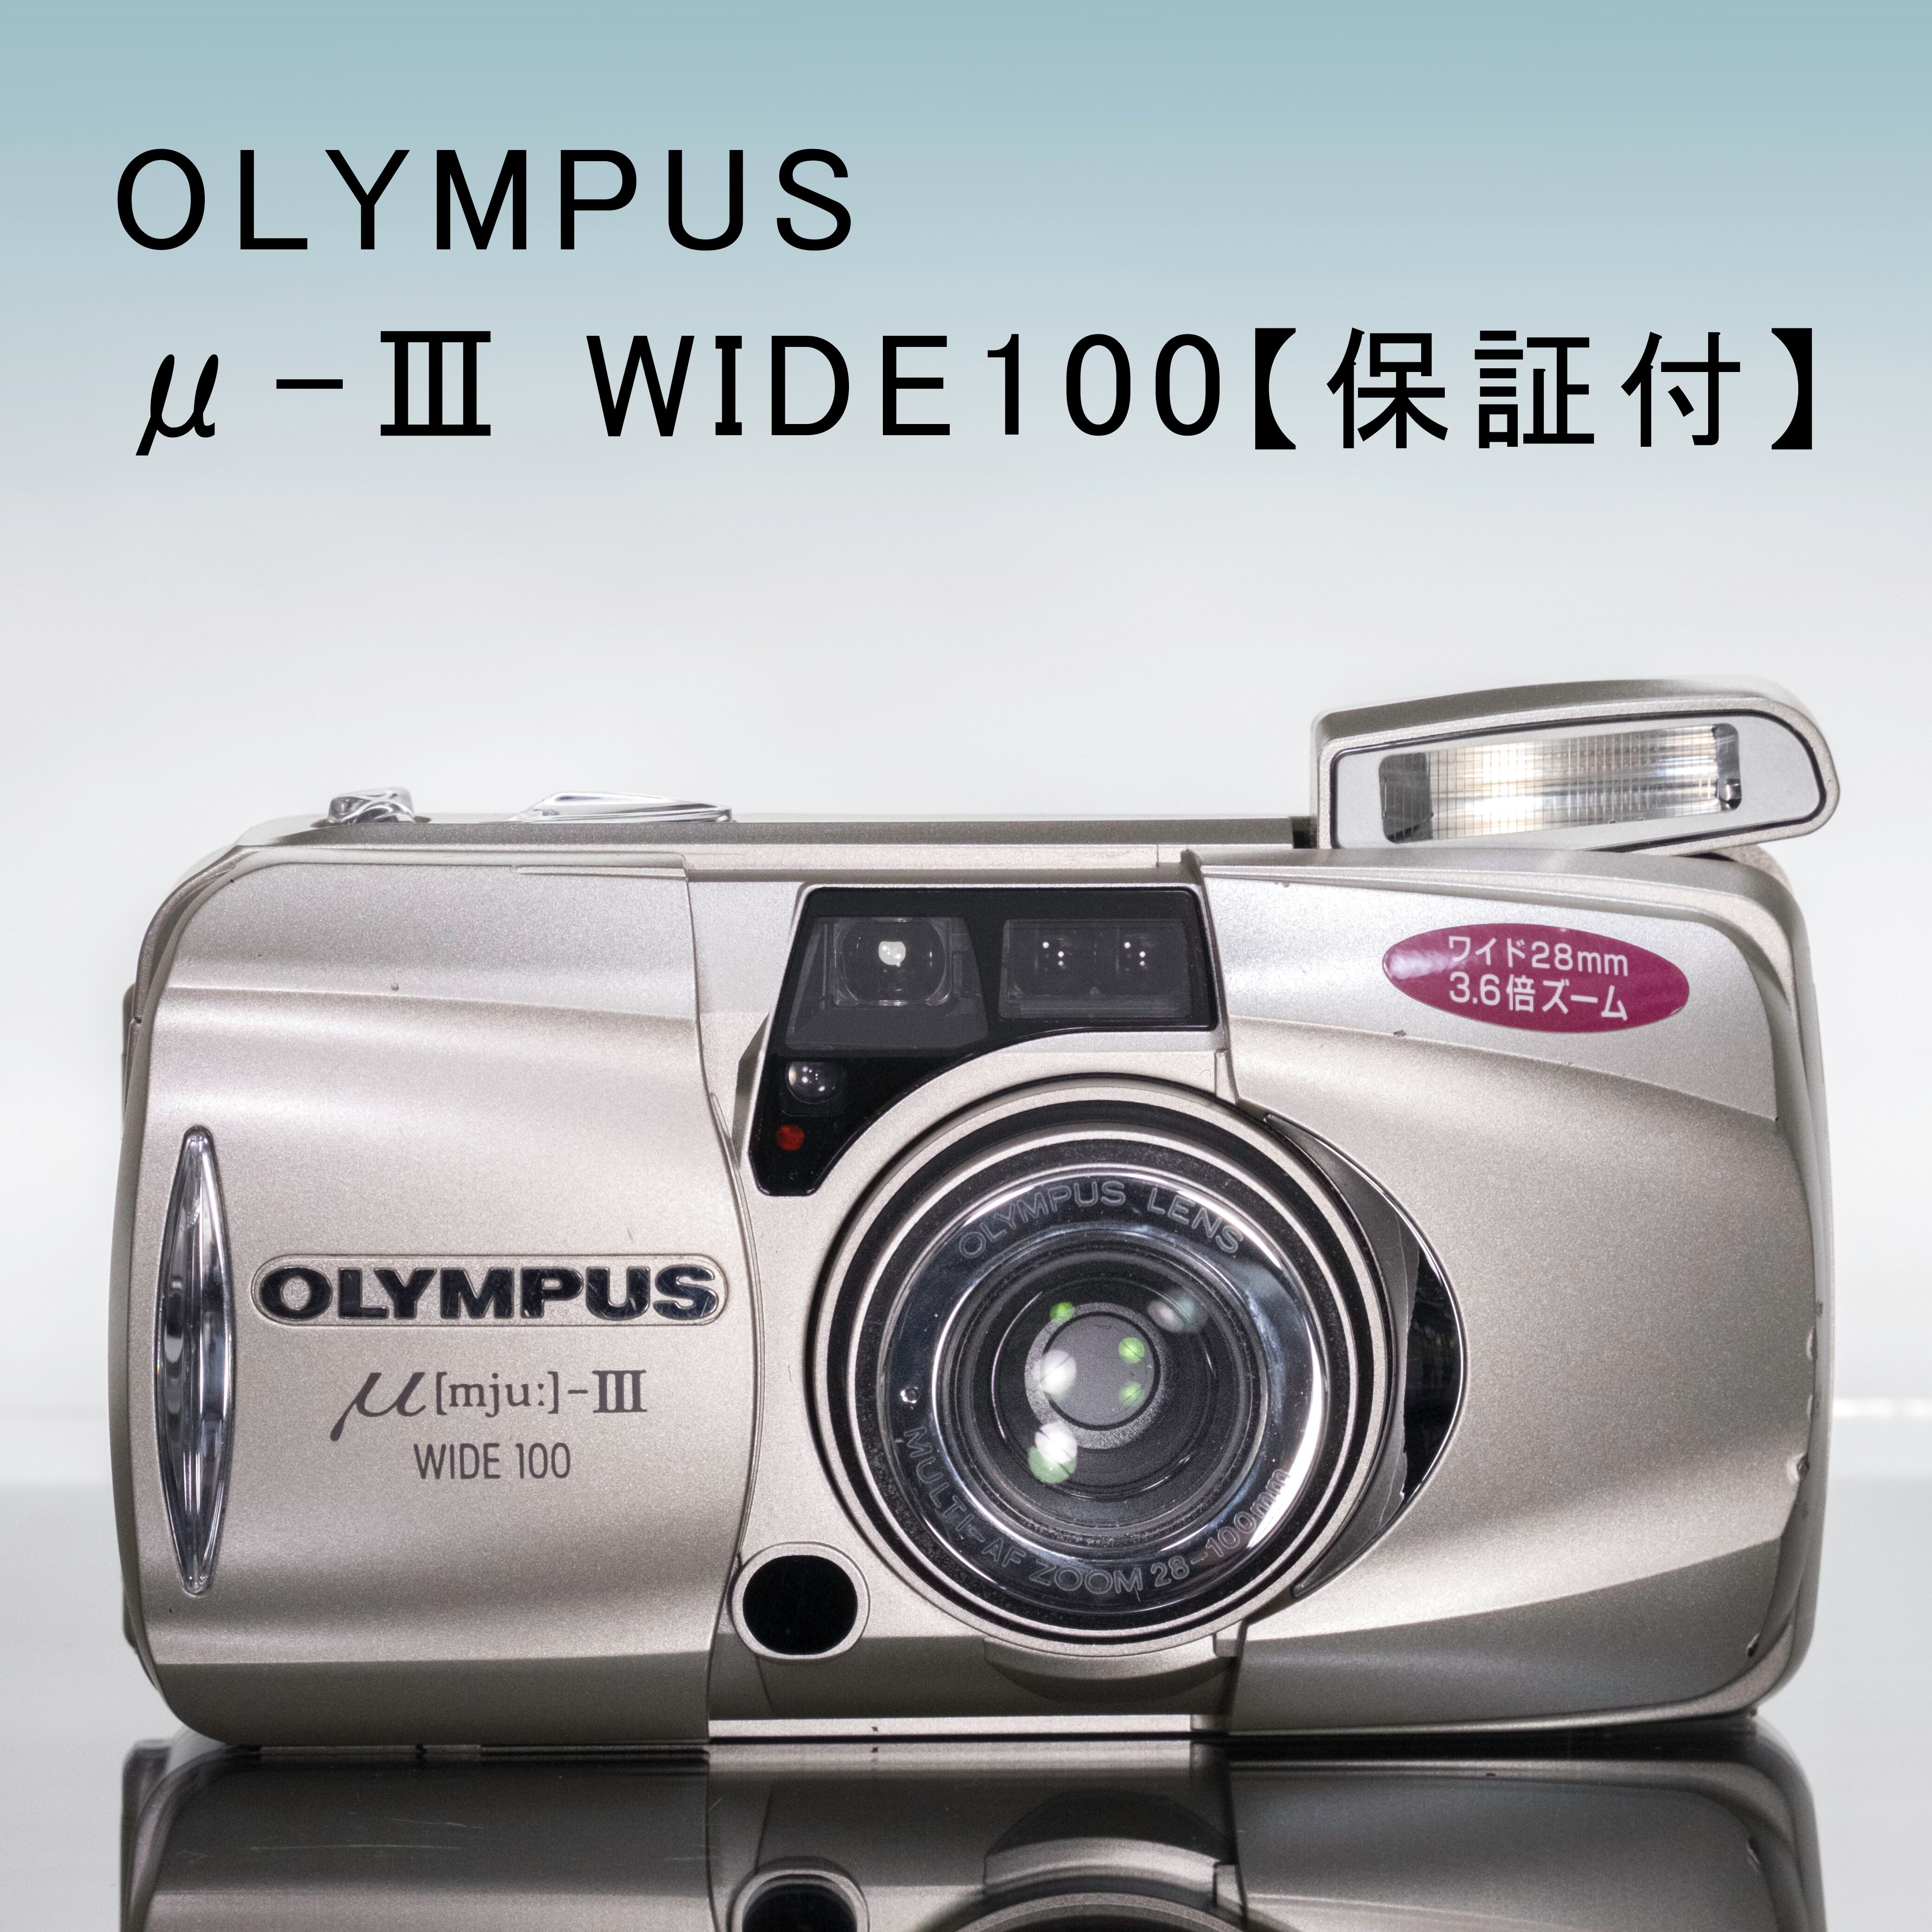 OLYMPUS オリンパス μ [mju] Ⅲ WIDE 100